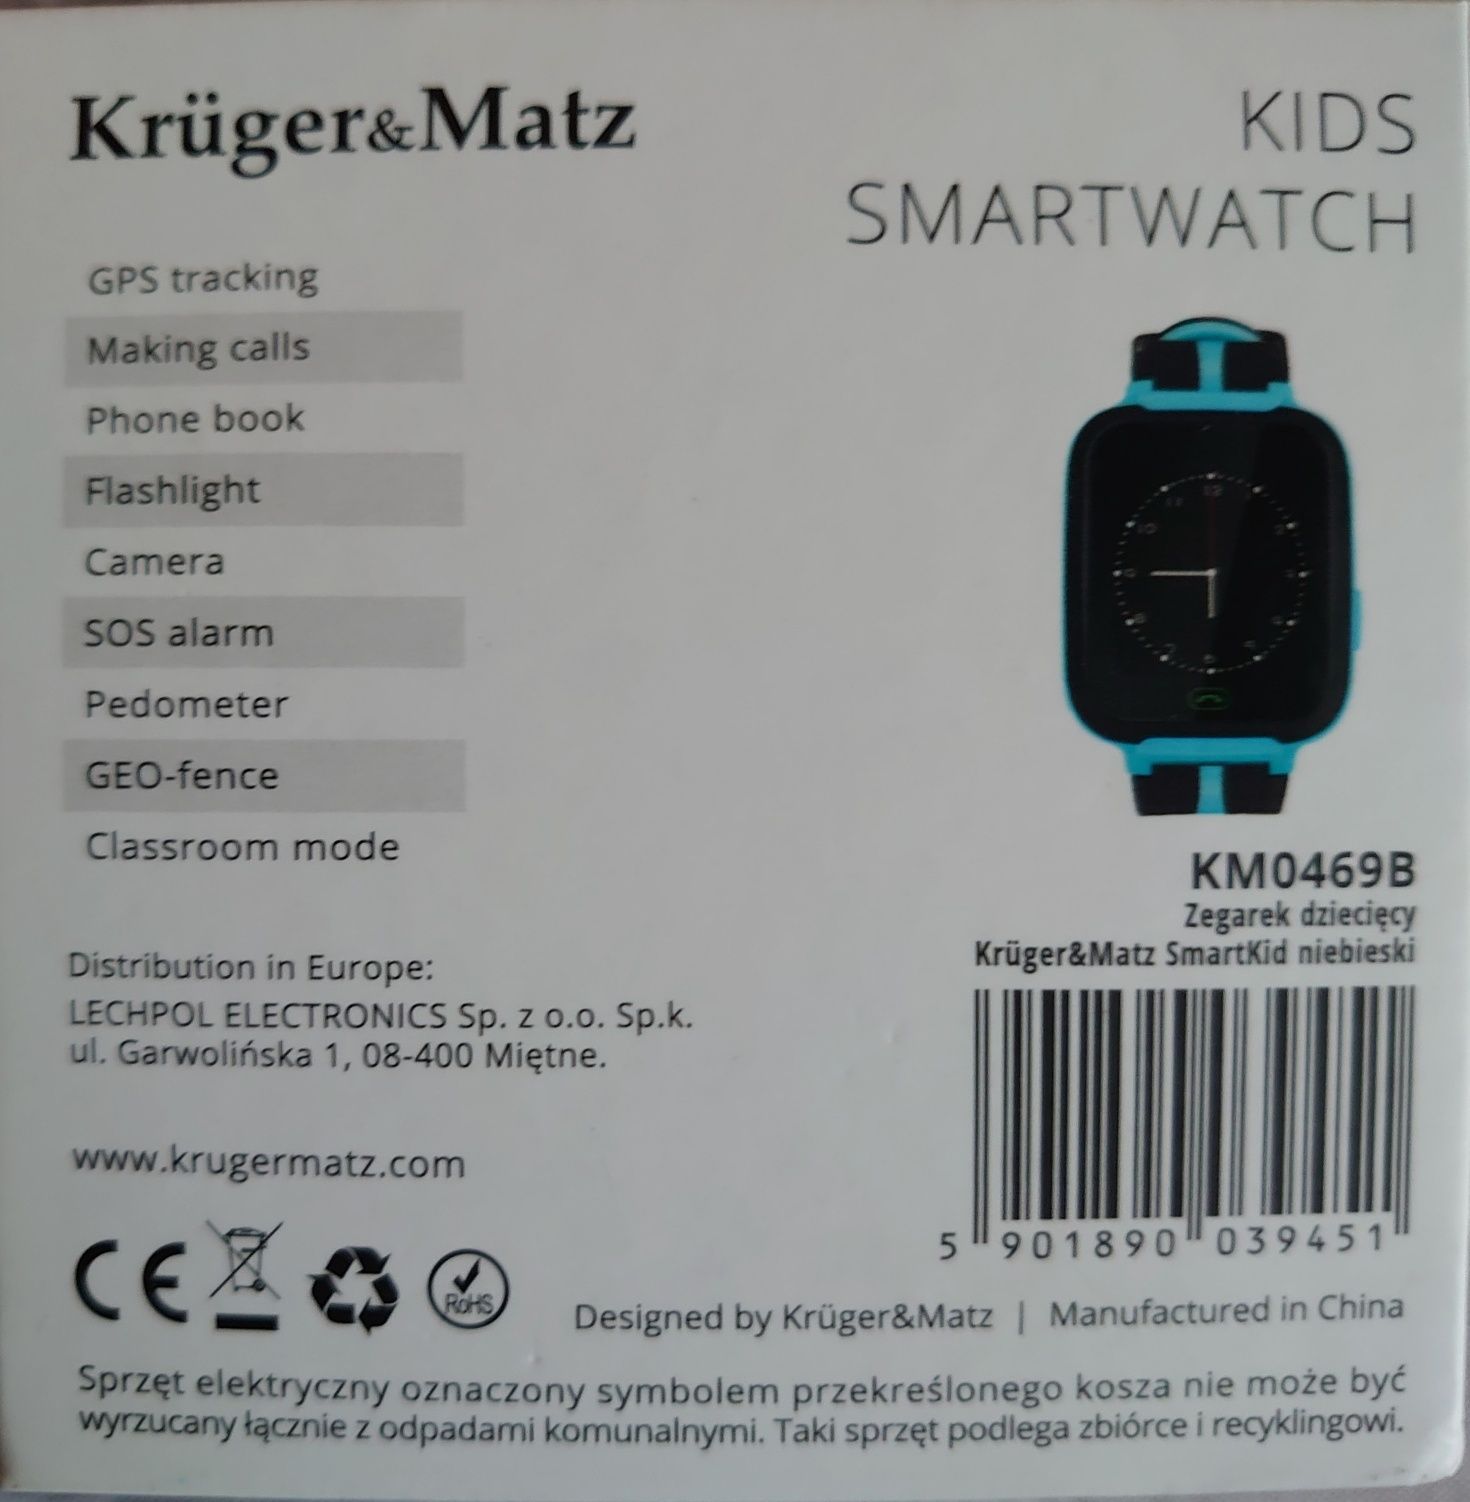 SmartWatch kids nowy